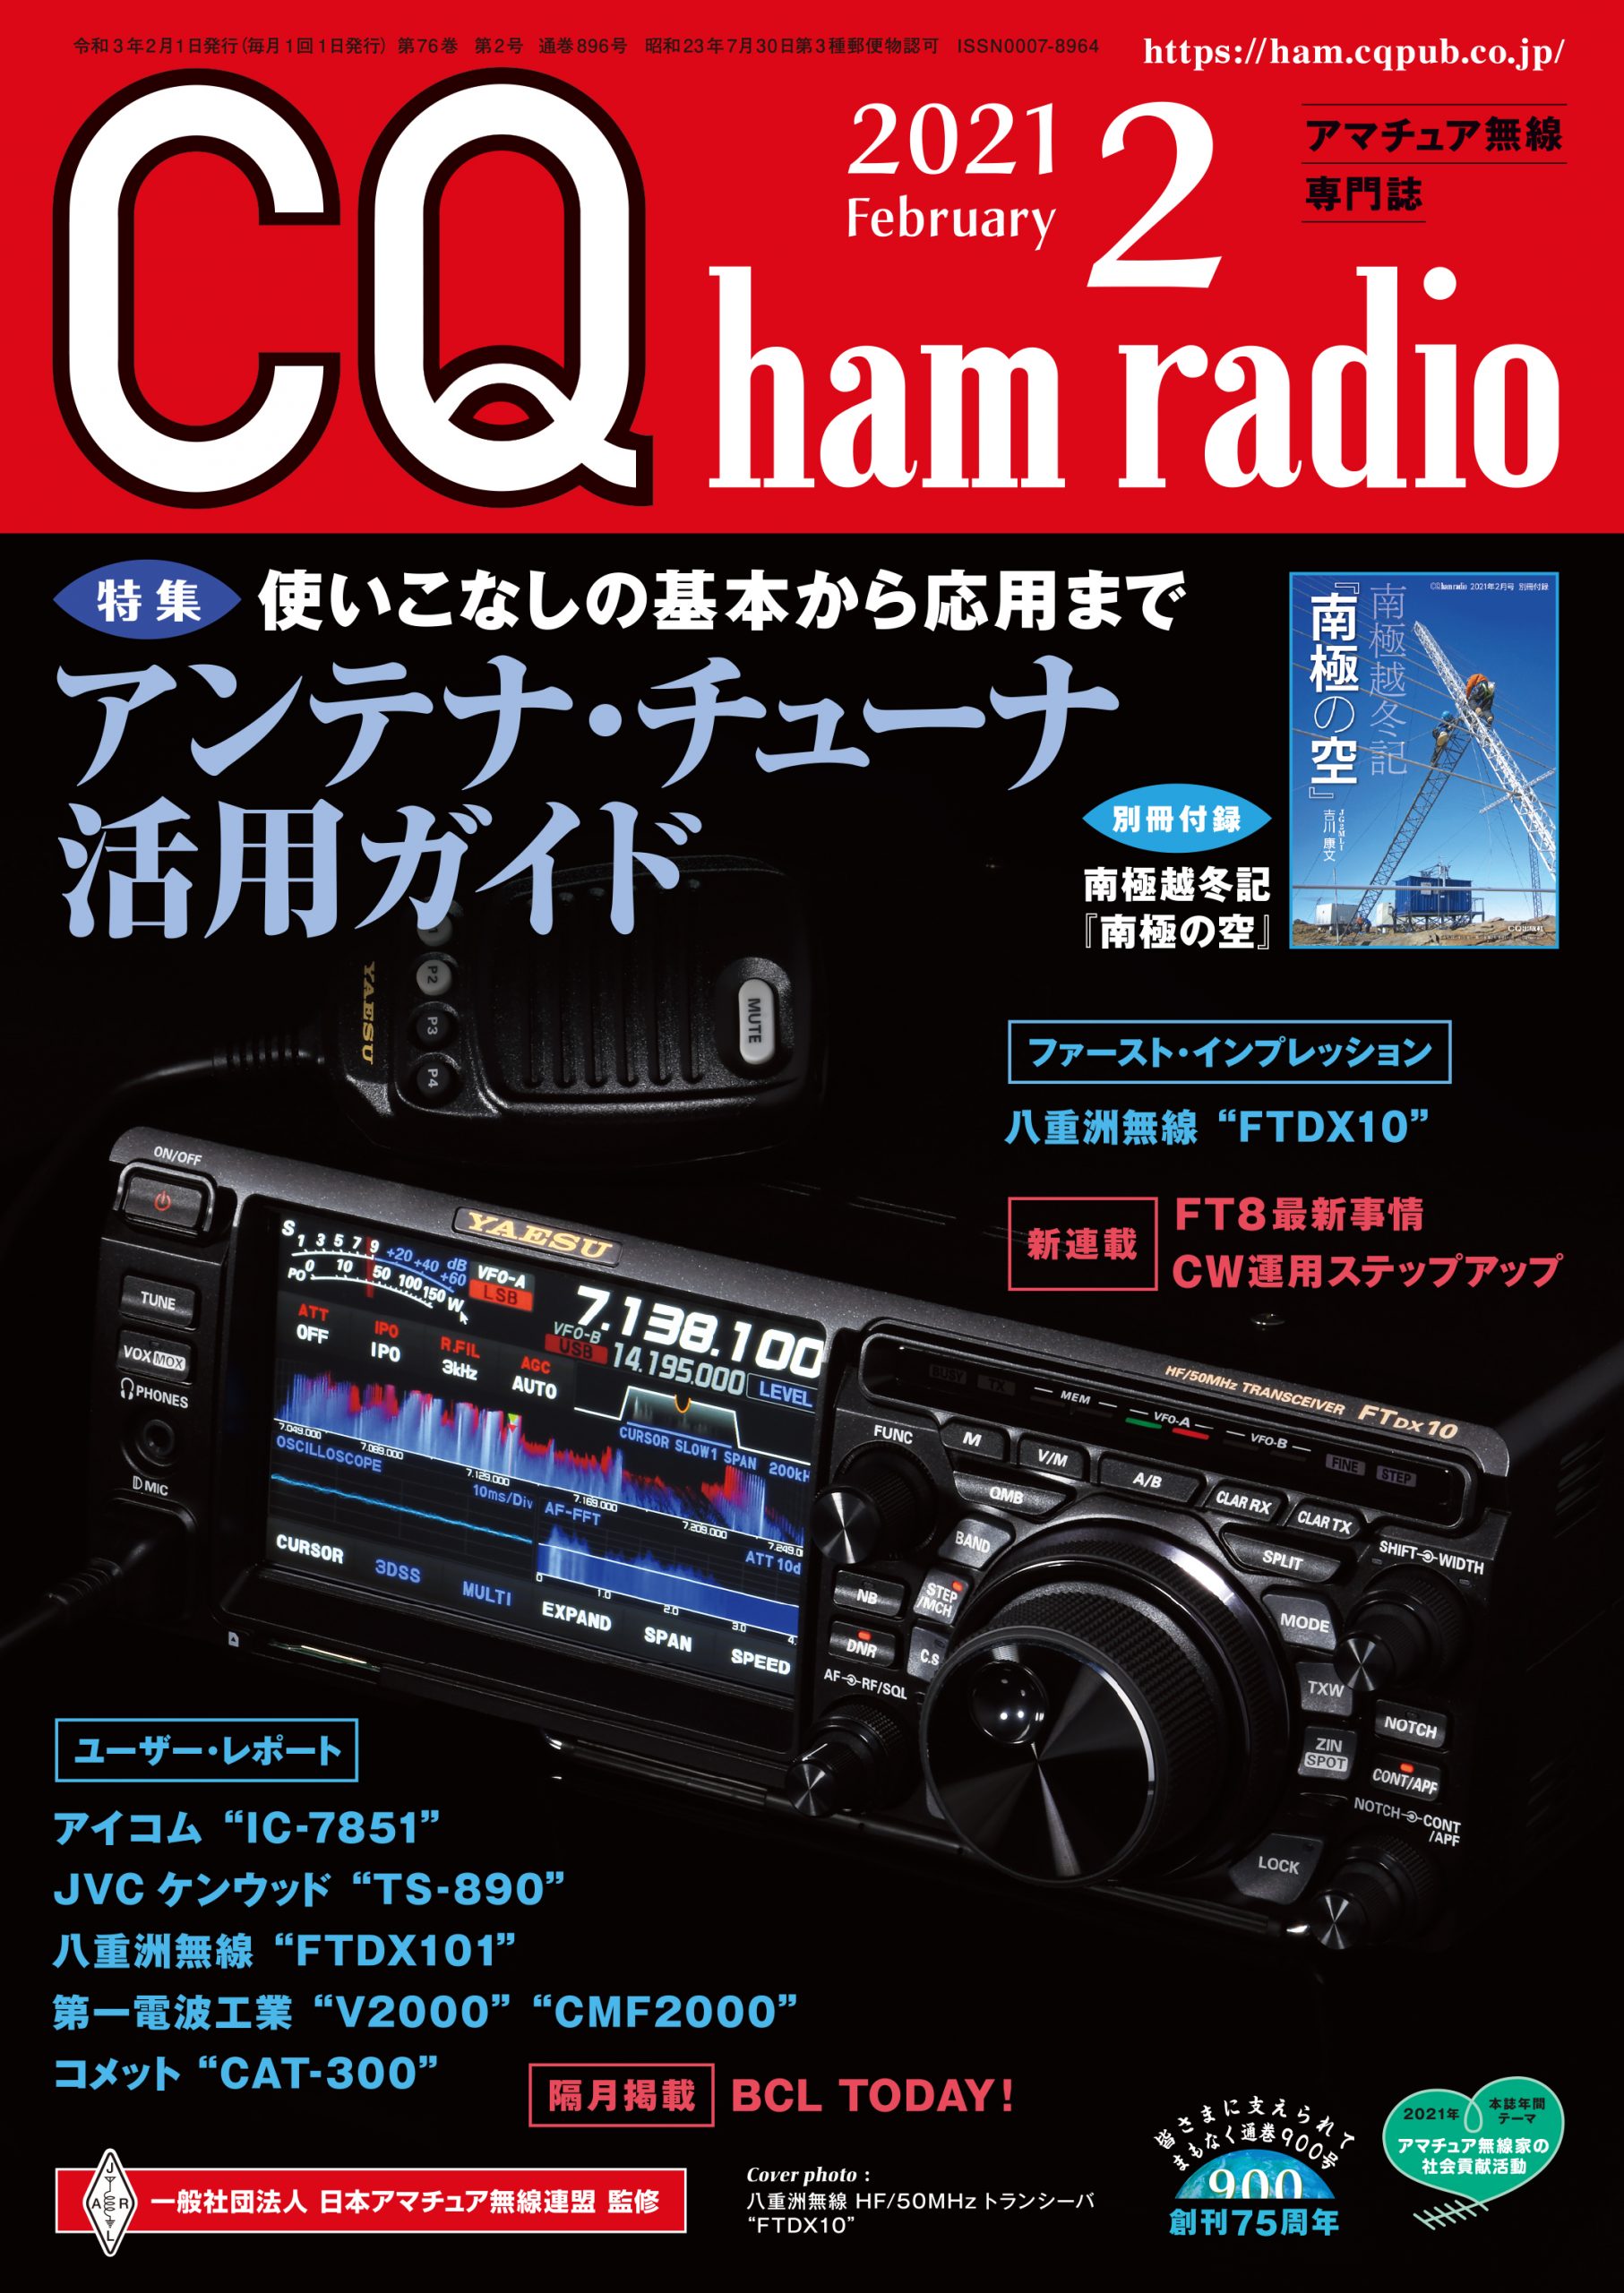 CQ ham radio 2021年 2月号